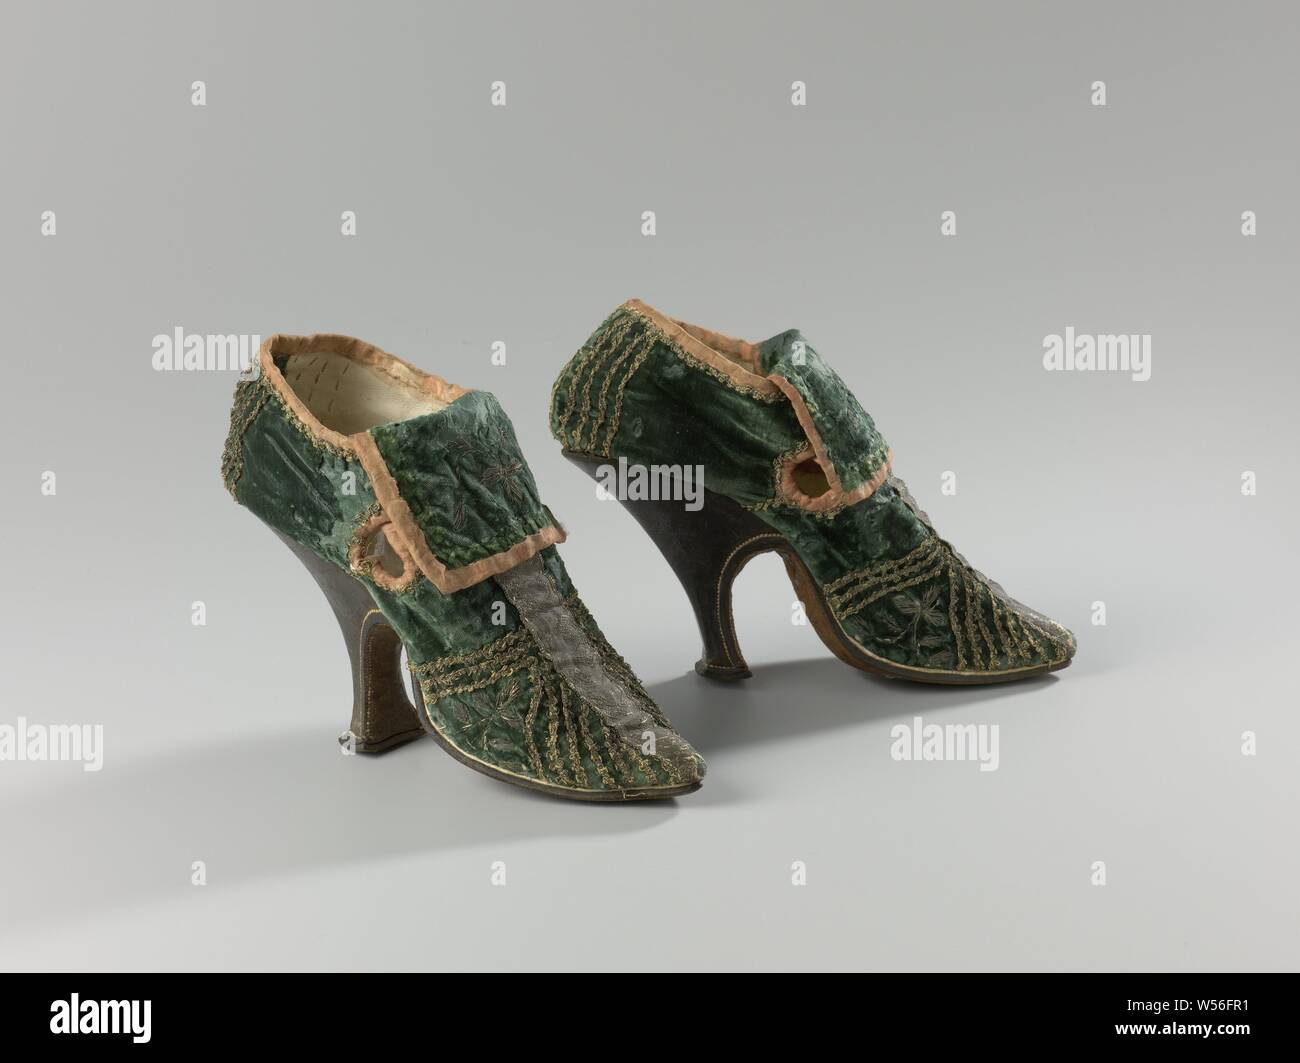 Par de zapatos de High-Heeled par de zapatos de tacón del zapato de mujer de terciopelo decorado con paredes y diagonales guarnecidos de plata, con tacón alto fino